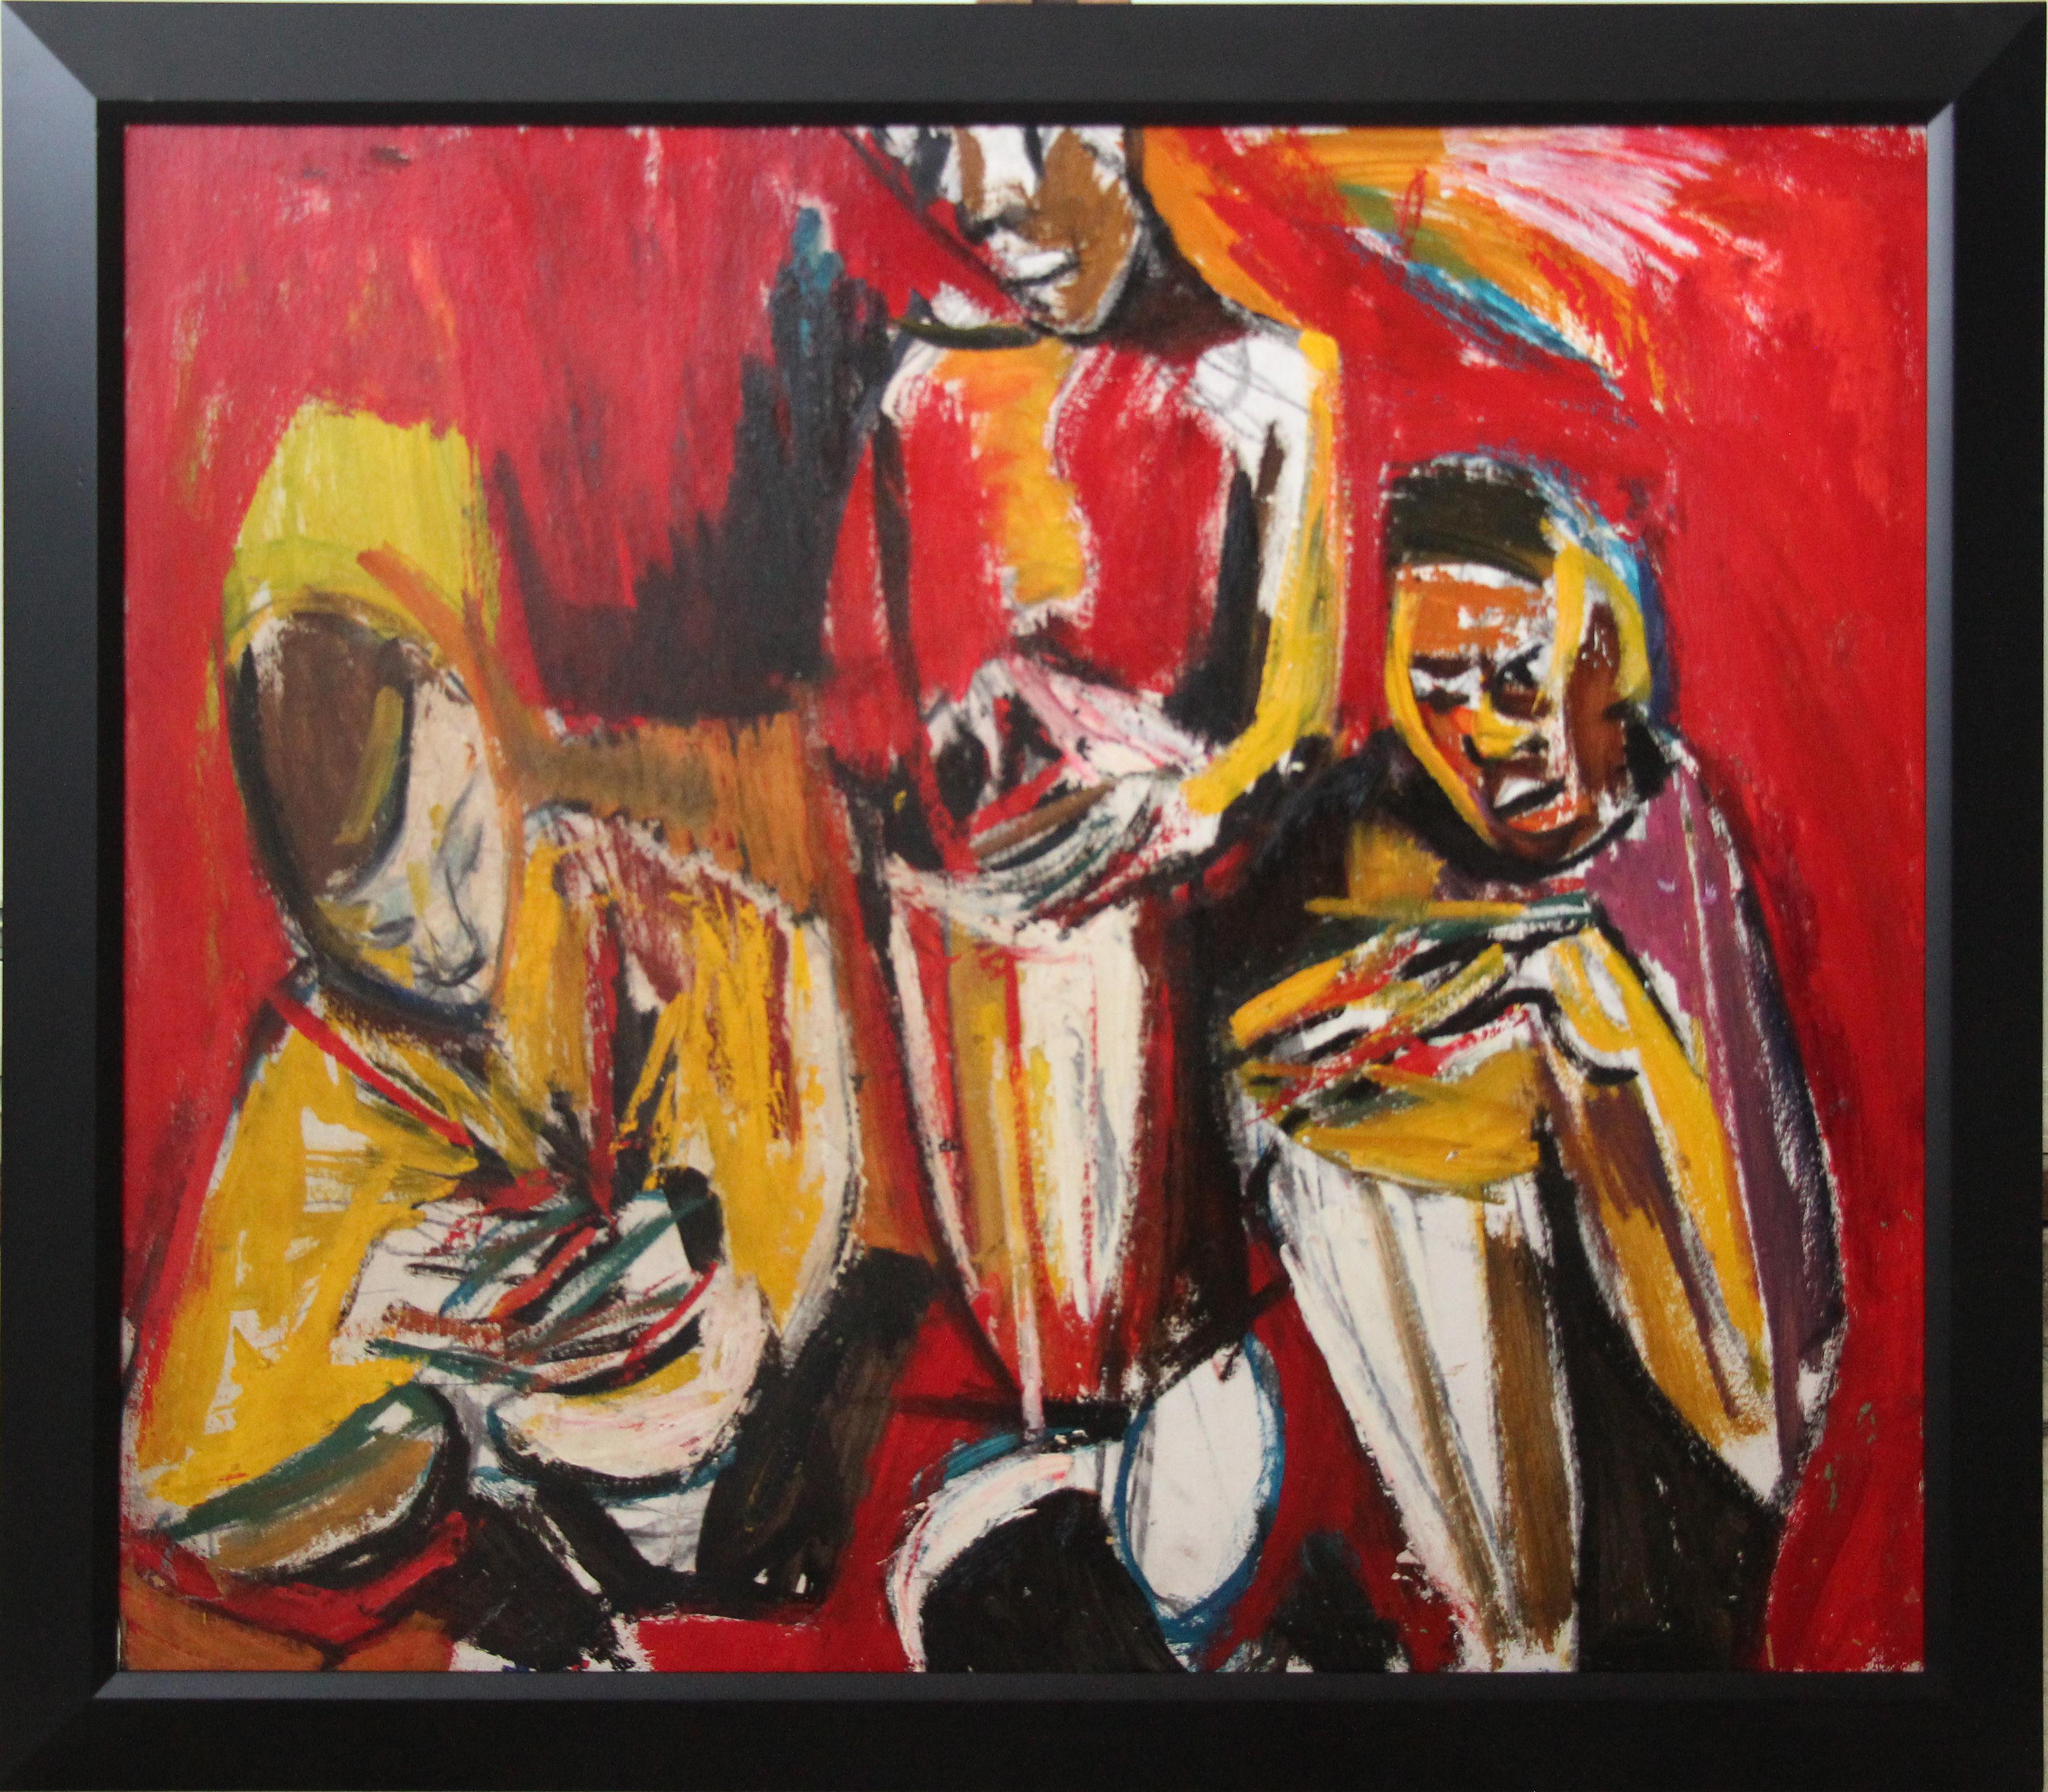 Tambours, portrait de groupe expressionniste de trois musiciens par l'artiste de Philadelphie - Painting de Bernard Harmon